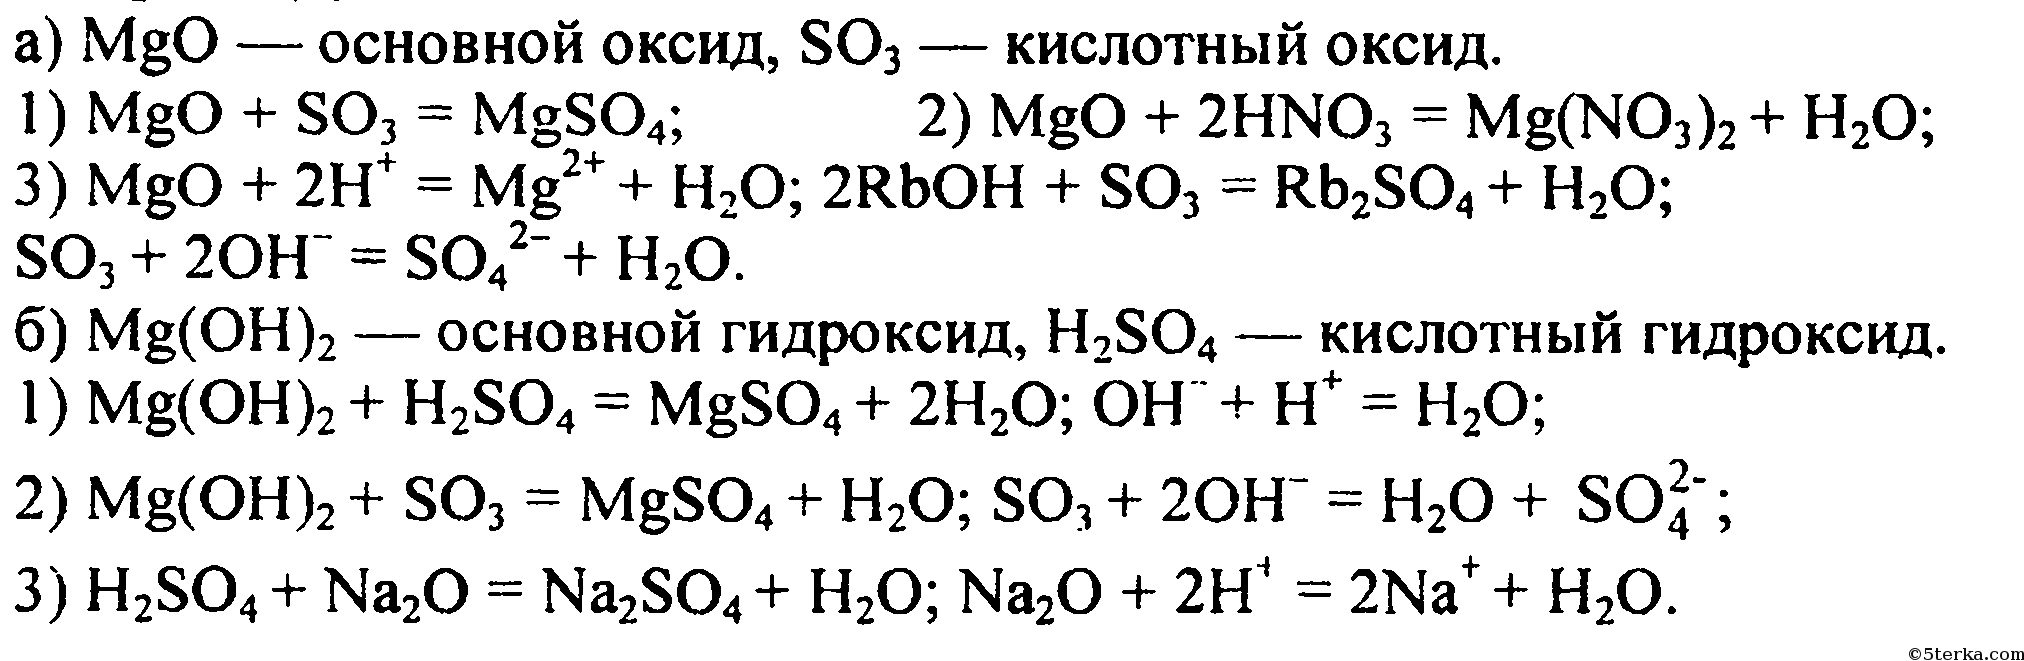 Формула оксида магния вода. Уравнение химической реакции MGO И so3. Химические уравнения магний хлор 2. Цепочка реакций с магнием. MGO+h2so4 уравнение реакции.